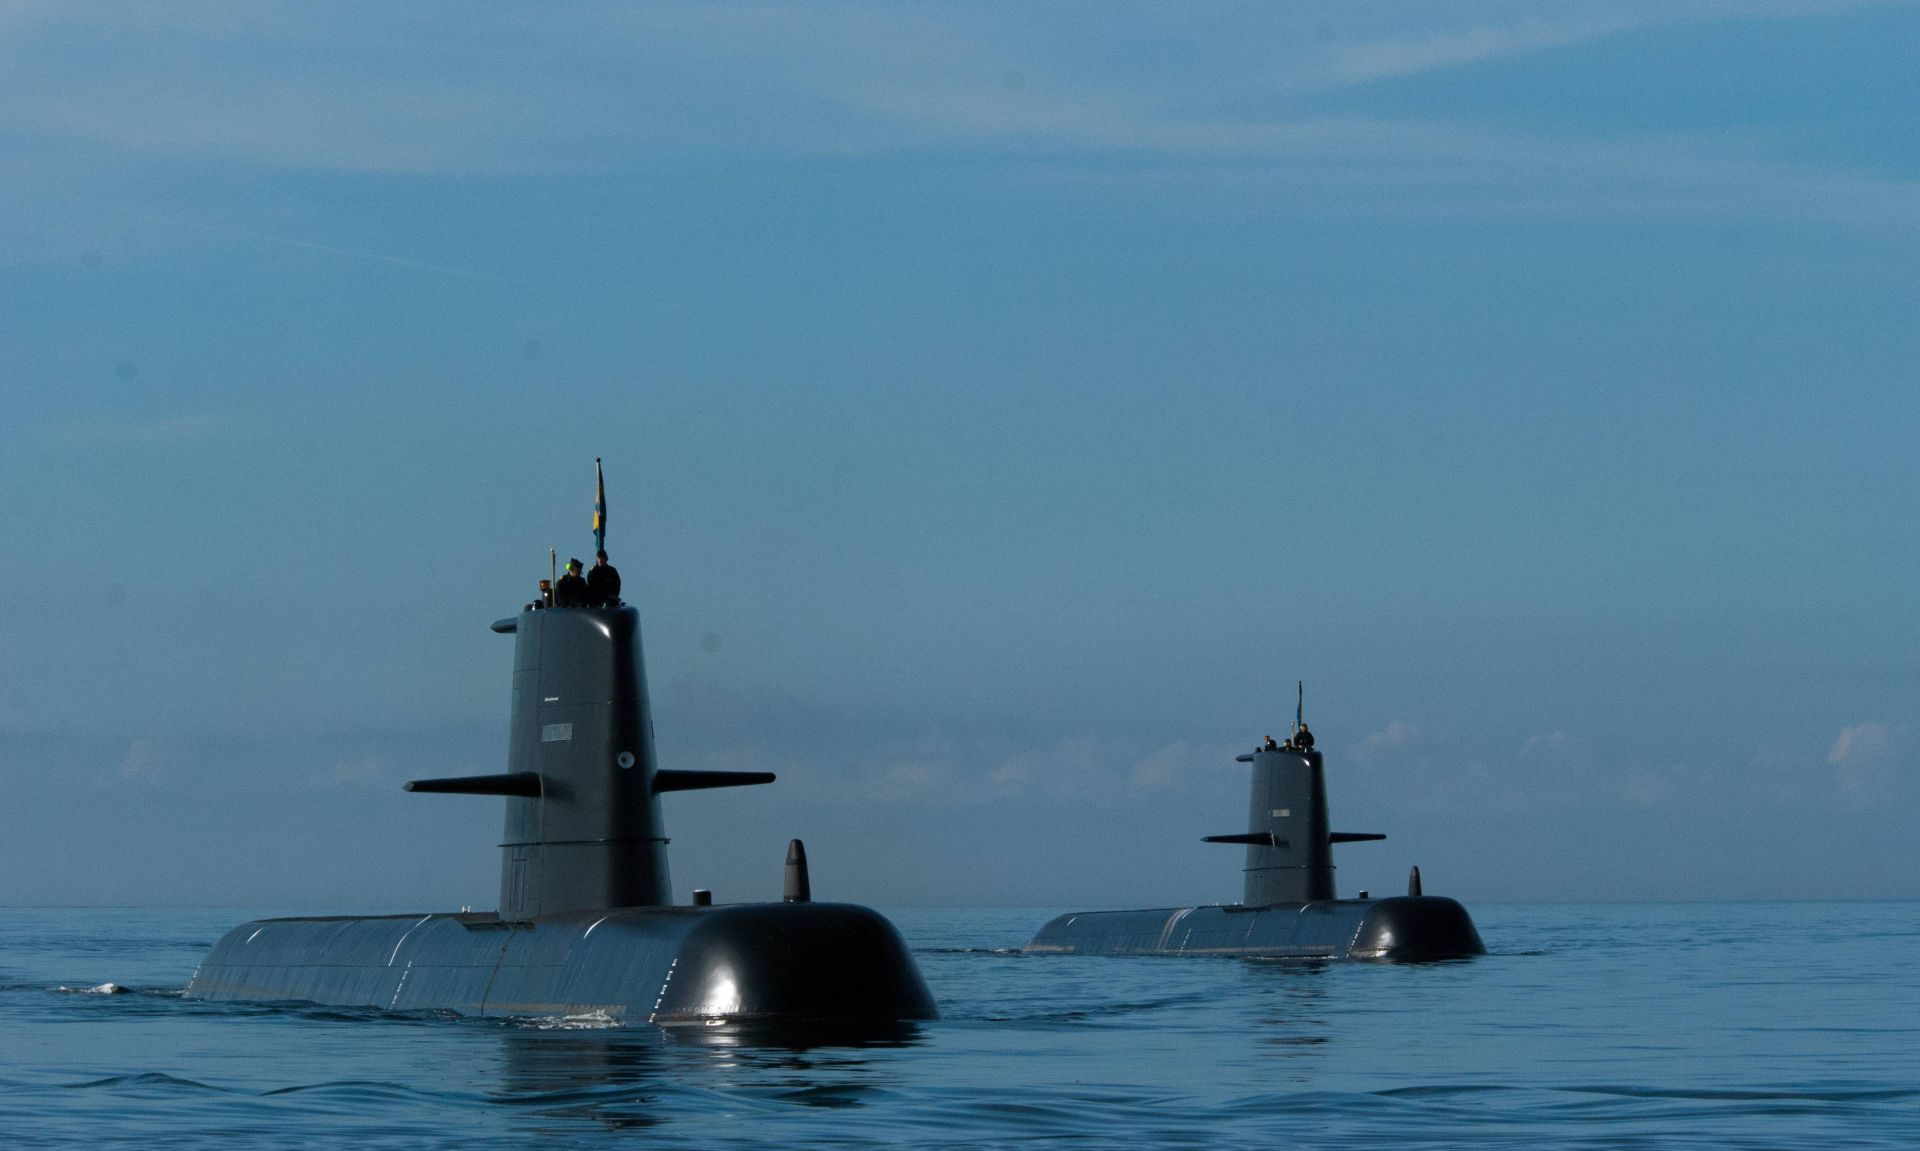 瑞典哥特兰级潜艇图片